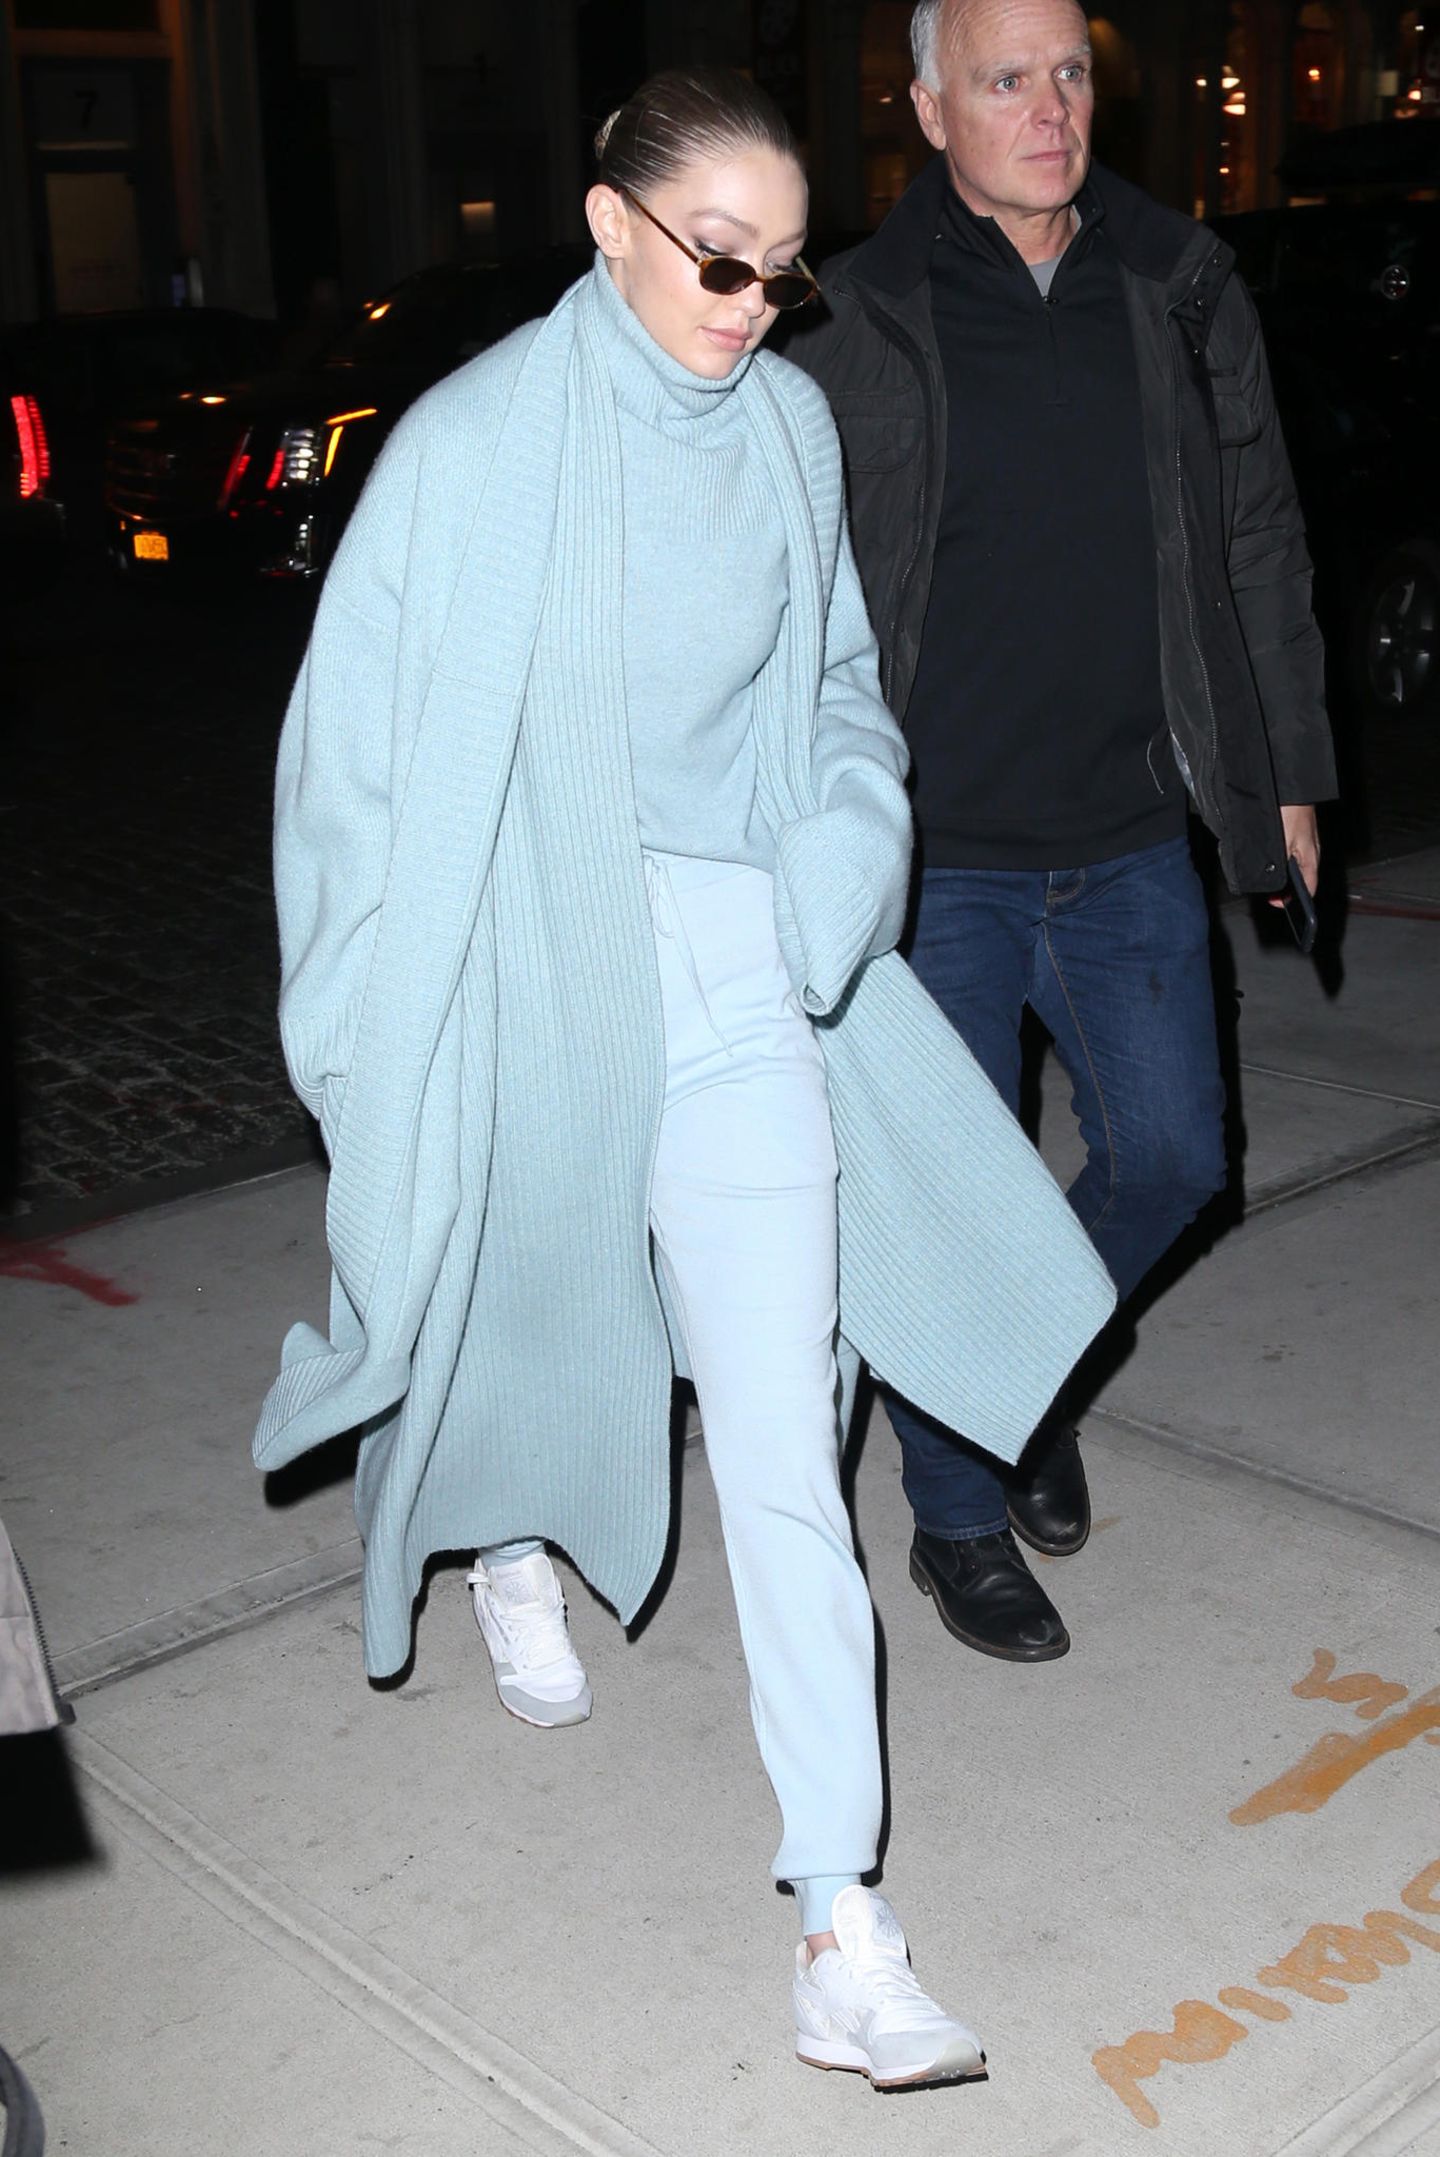 Auch ihre ältere Schwester Gigi mag es privat lieber kuschelig. "Ton in Ton" ist für ihren Freizeit-Look gar kein Ausdruck: In bonbonblauer Hose mit passendem Rollkragenpullover und breitem Schal ist sie nachts in den Straßen von New York unterwegs. 